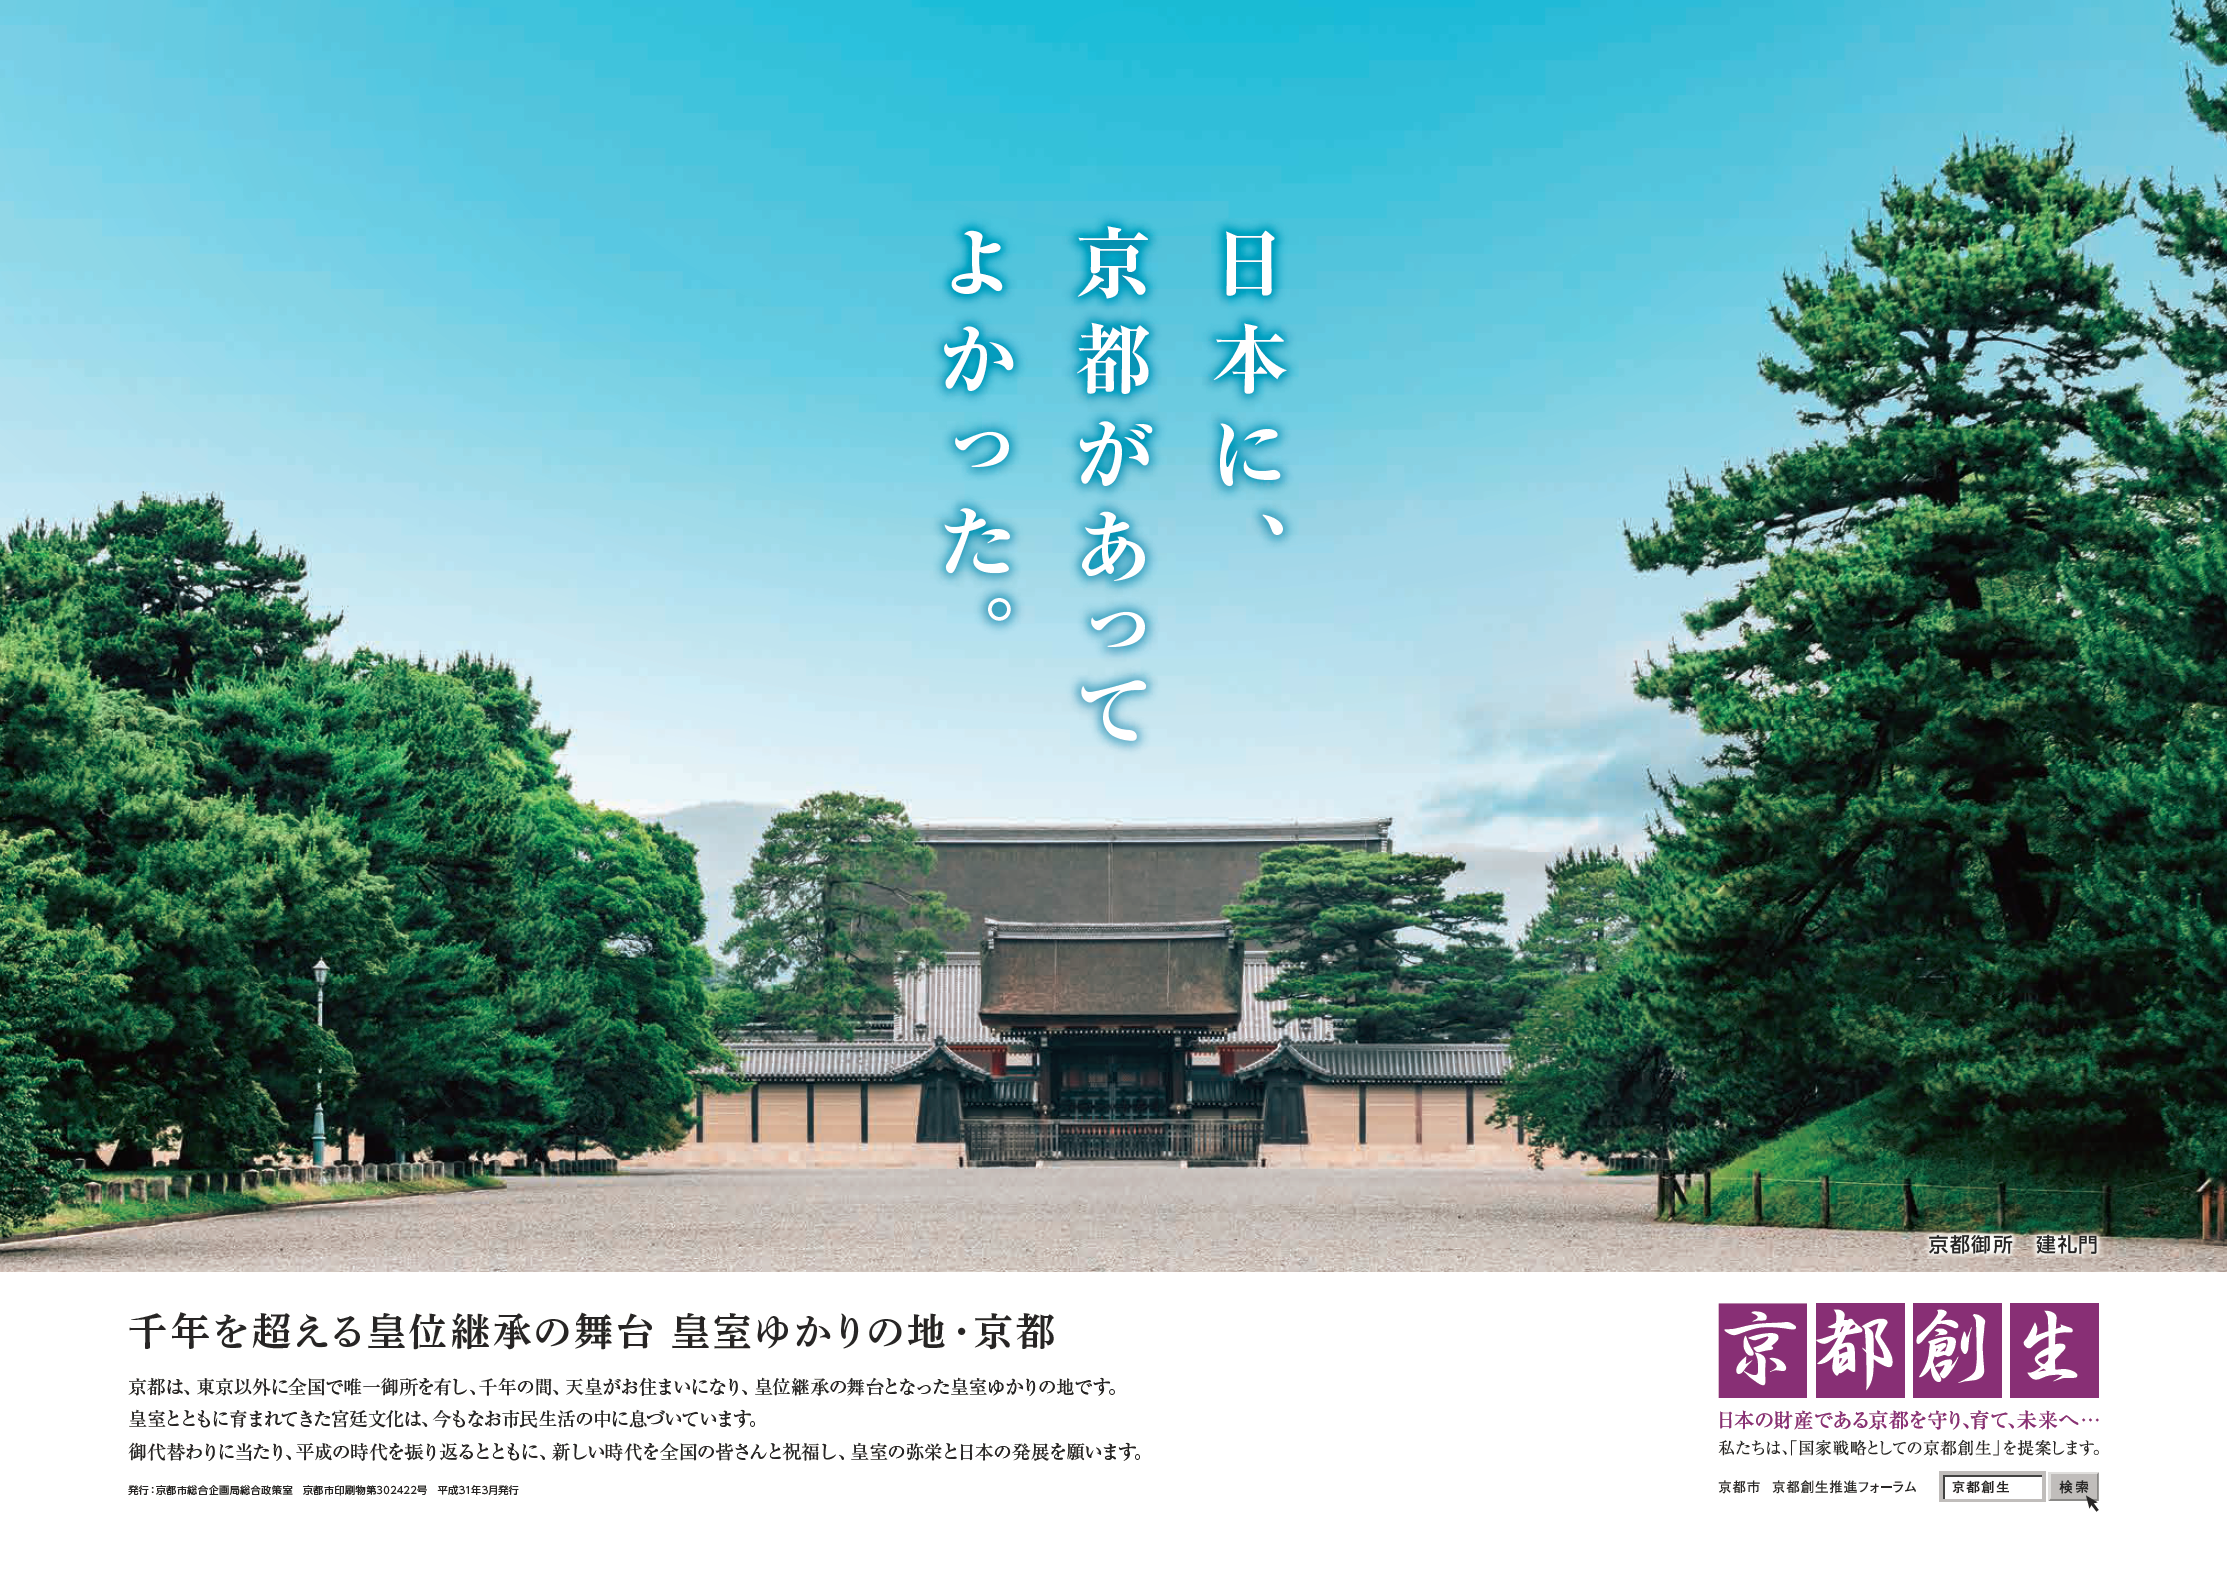 京都市 京都創生prポスター 日本に 京都があってよかった